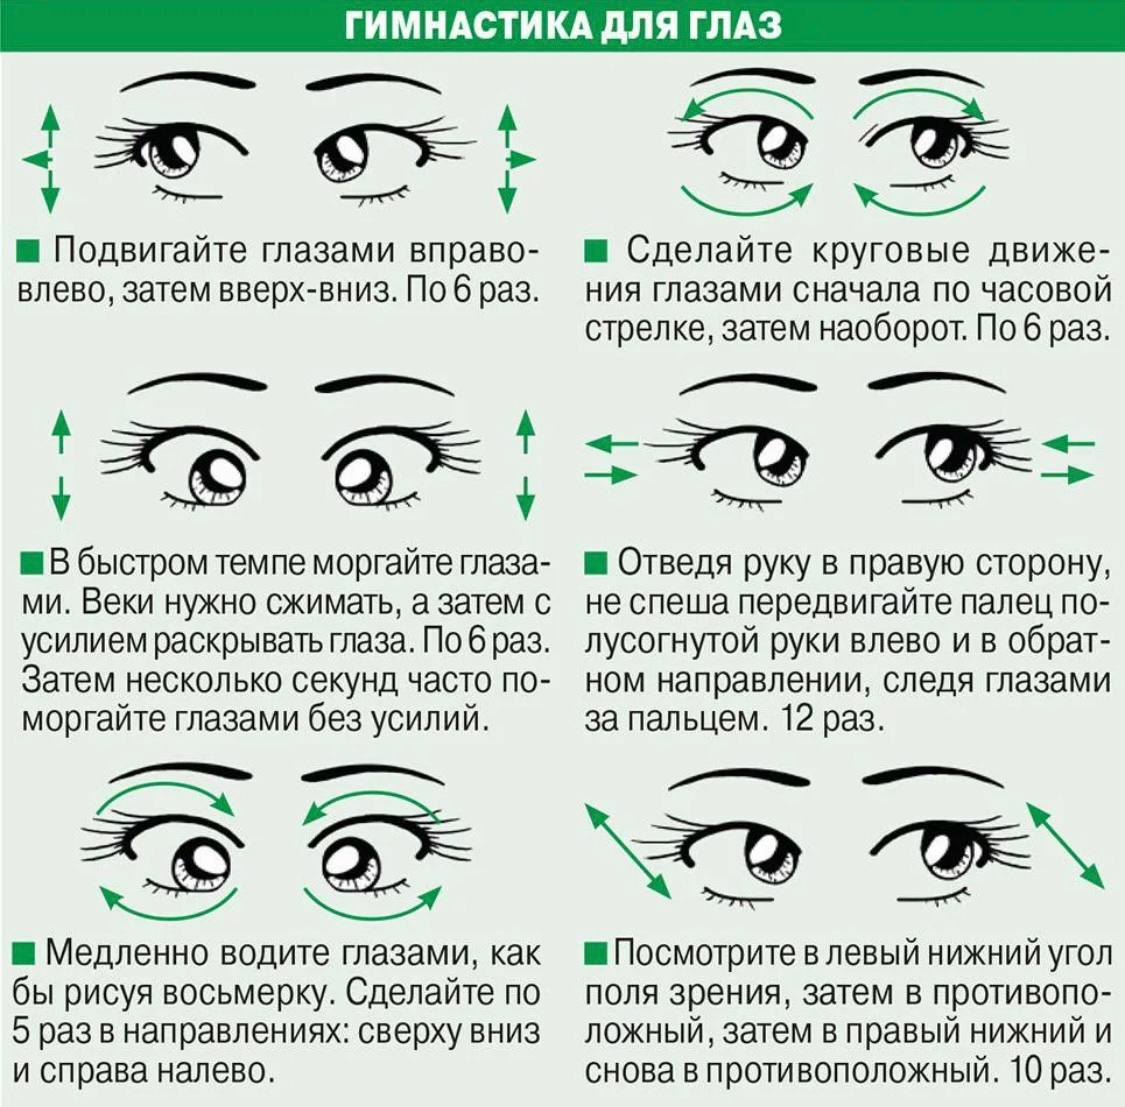 Упражнения восстанавливающие зрение. Гимнастика для глаз для улучшения зрения комплекс упражнений. Упражнения для глаз для улучшения зрения при близорукости. Упражнения для глаз для улучшения зрения при близорукости для детей. Комплекс упражнений для коррекции зрения 10 упражнений.